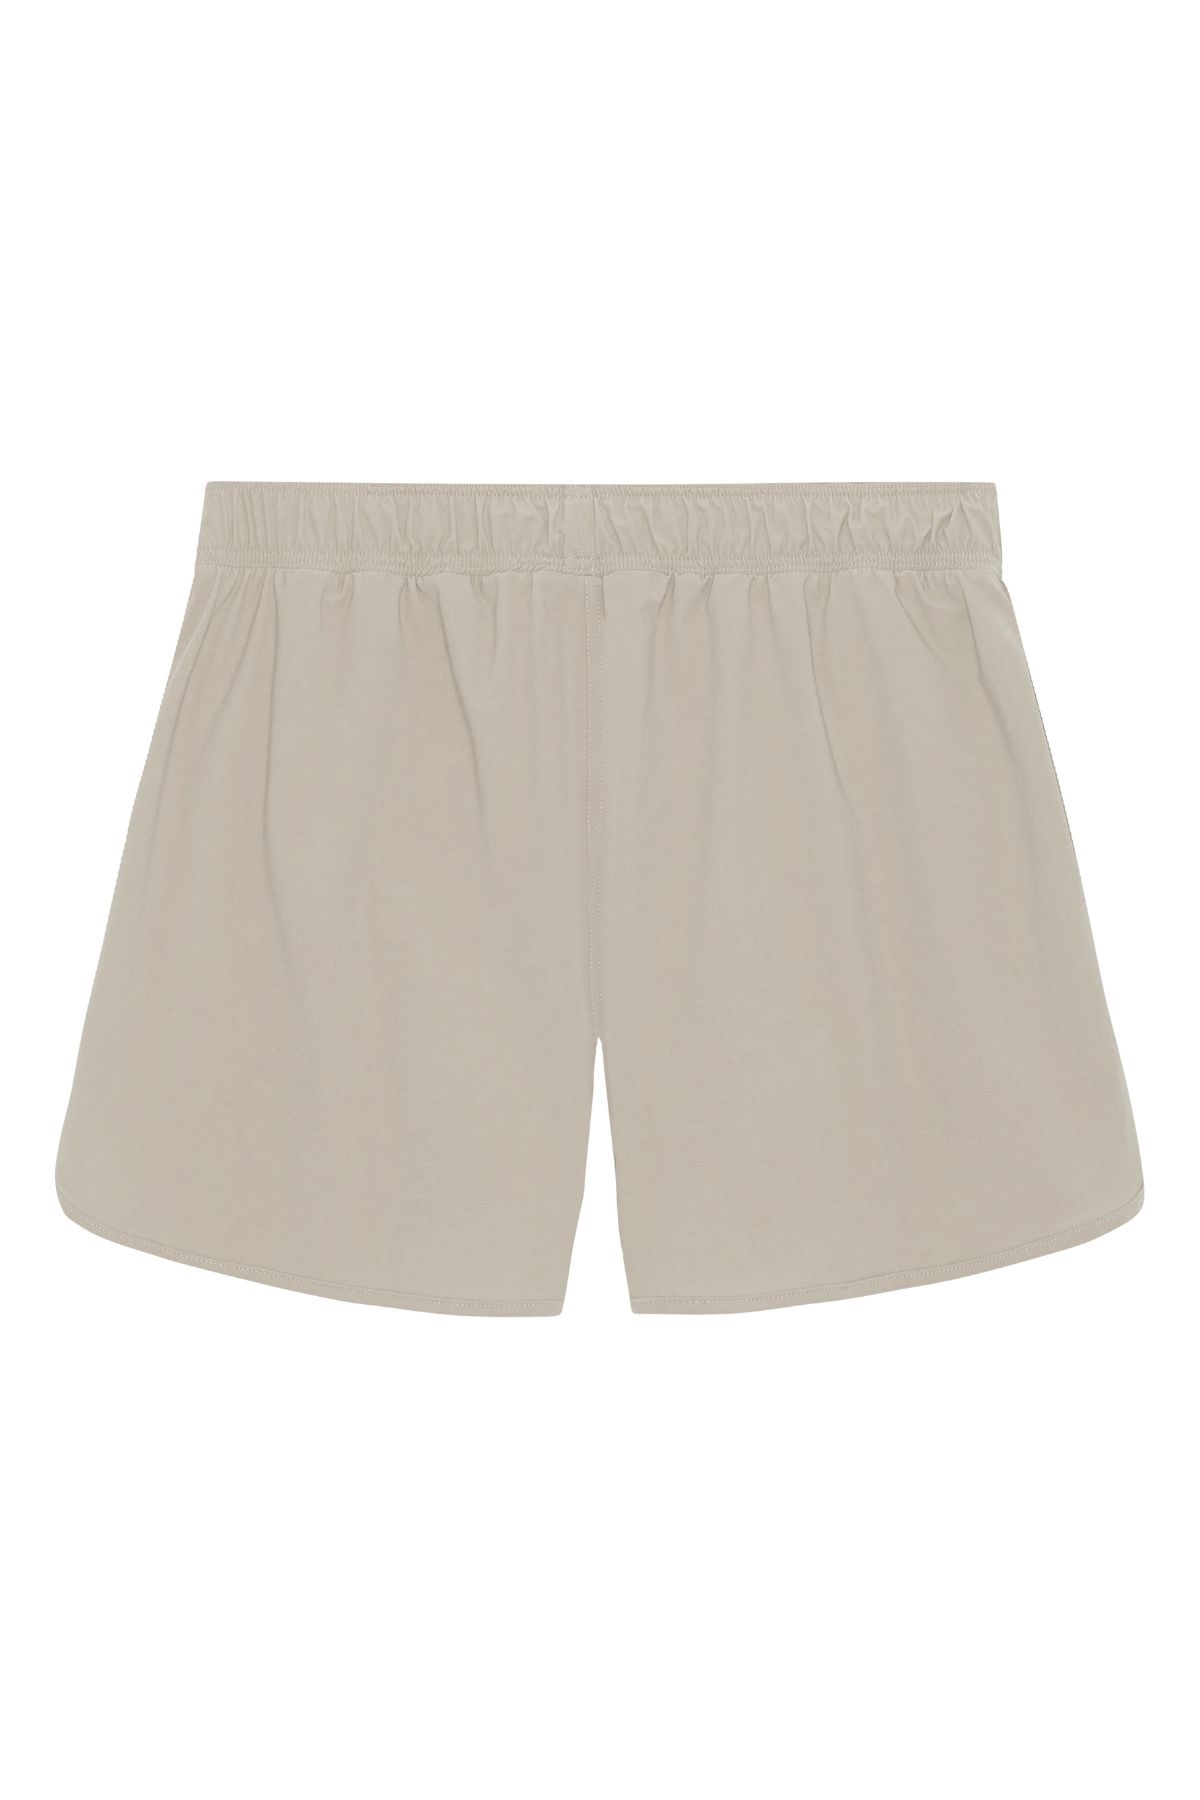 Balian men’s shorts - Sand